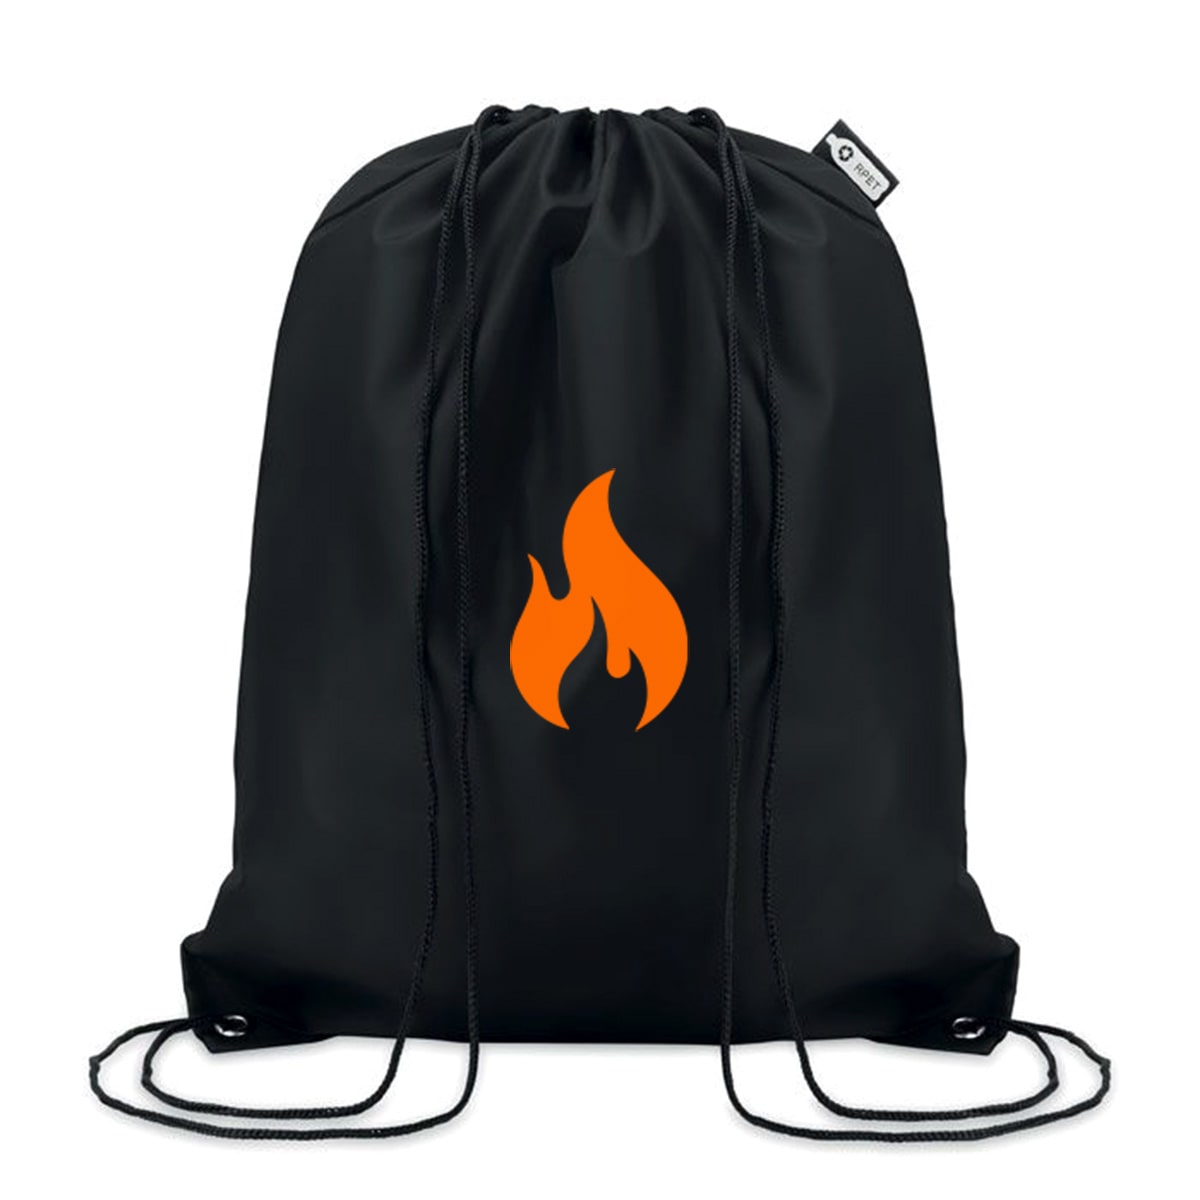 Black Pyro backpack w/Flame